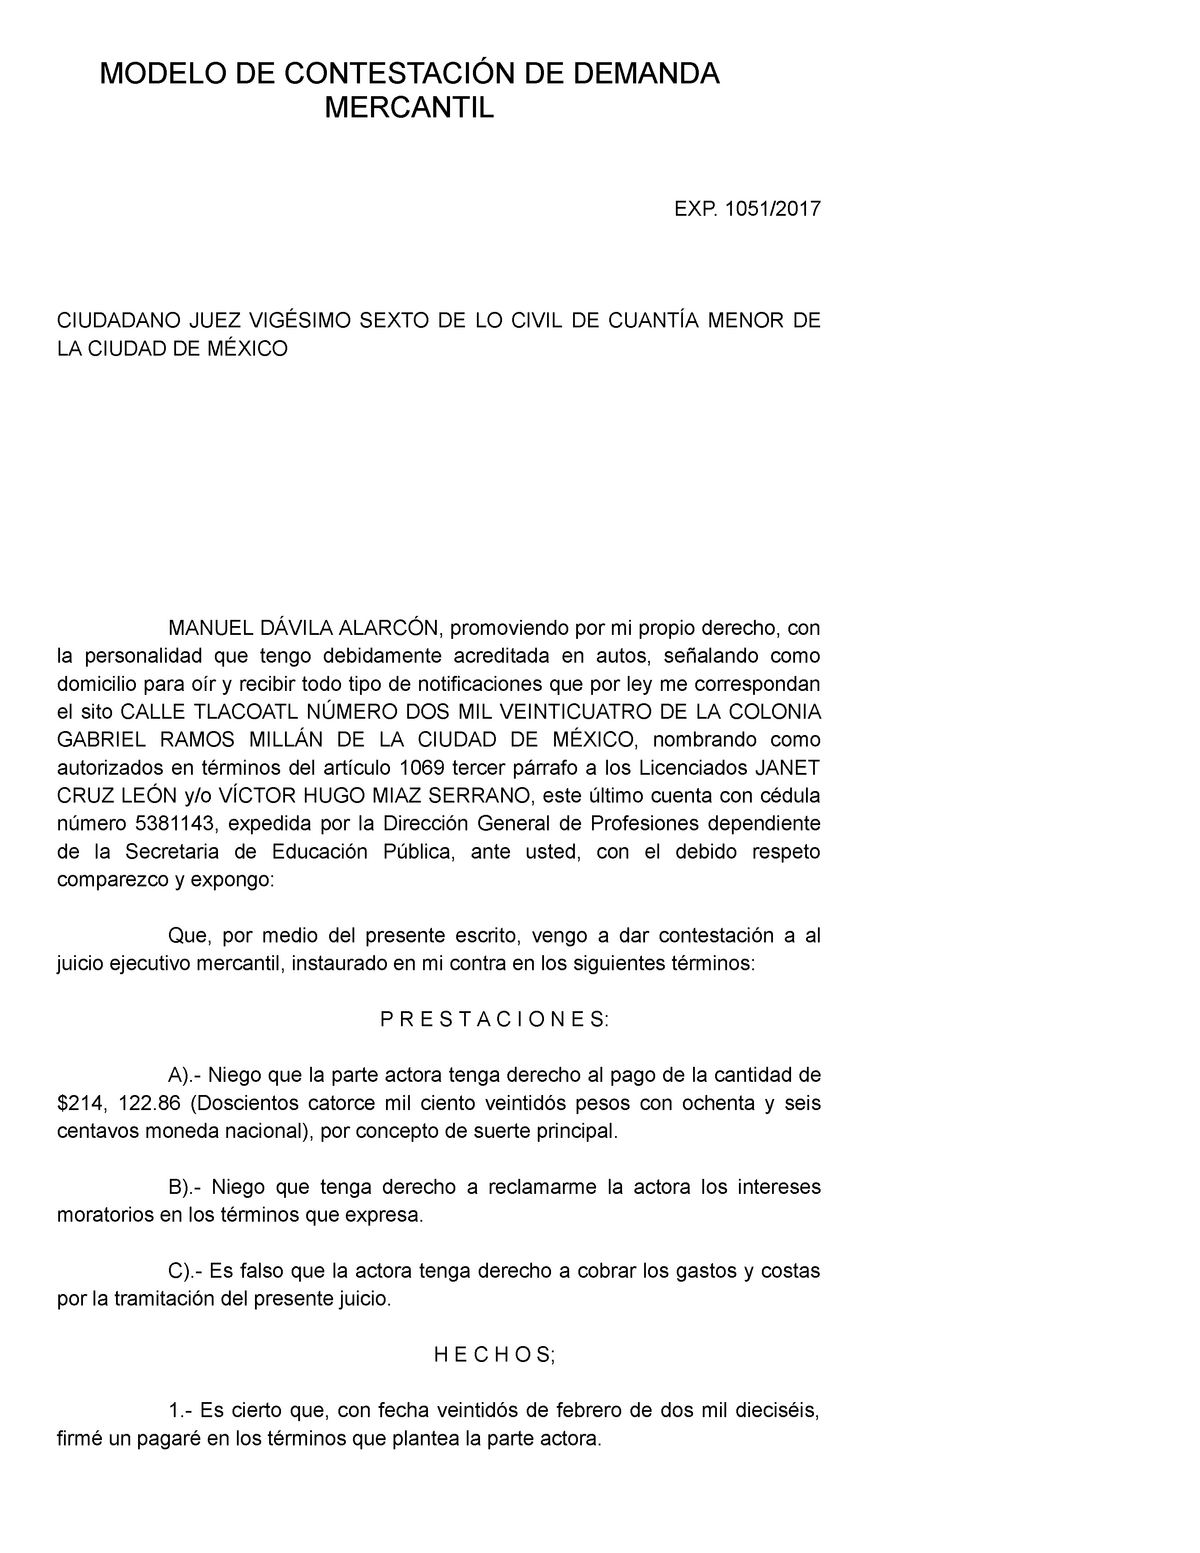 Modelo DE Contestación DE Demanda Mercantil Practica Forense Juridica.  Puebla - EXP. 1051/ CIUDADANO - Studocu